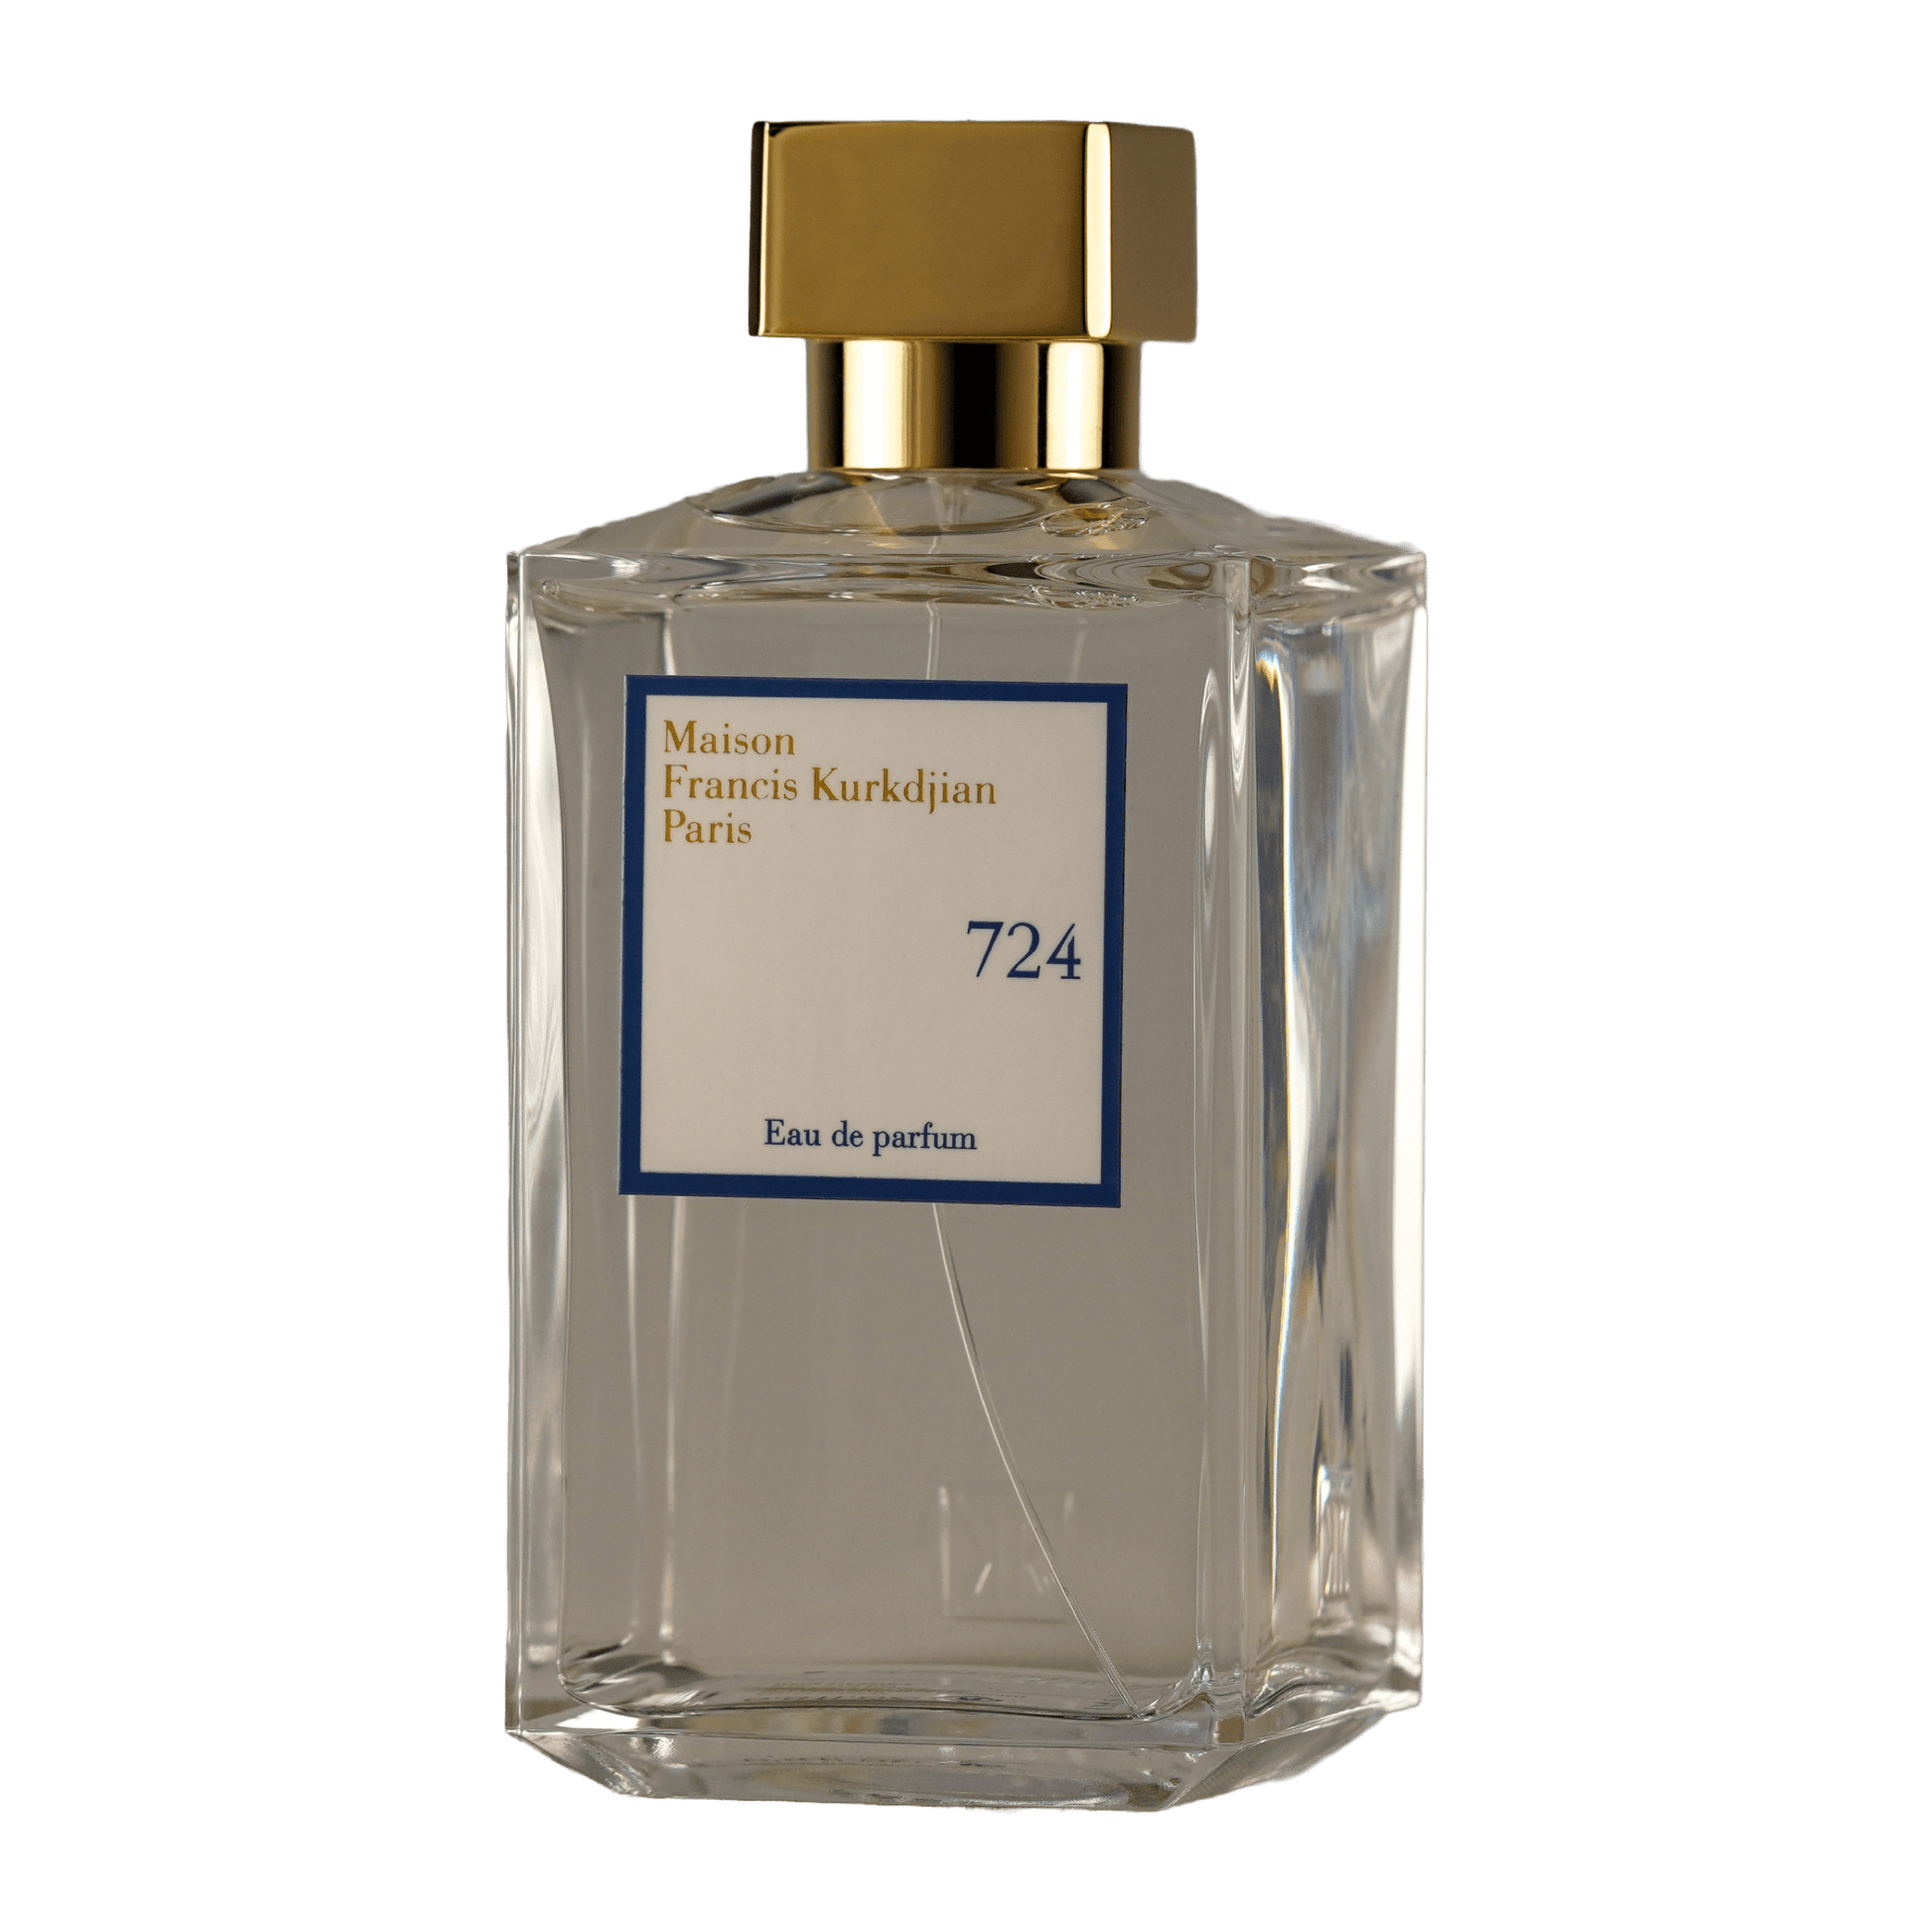 Bild von dem Flakon des Duftes 724 als Eau de Parfum von Maison Francis Kurkdjian Paris MFK angeboten zum kaufen als Parfümprobe.